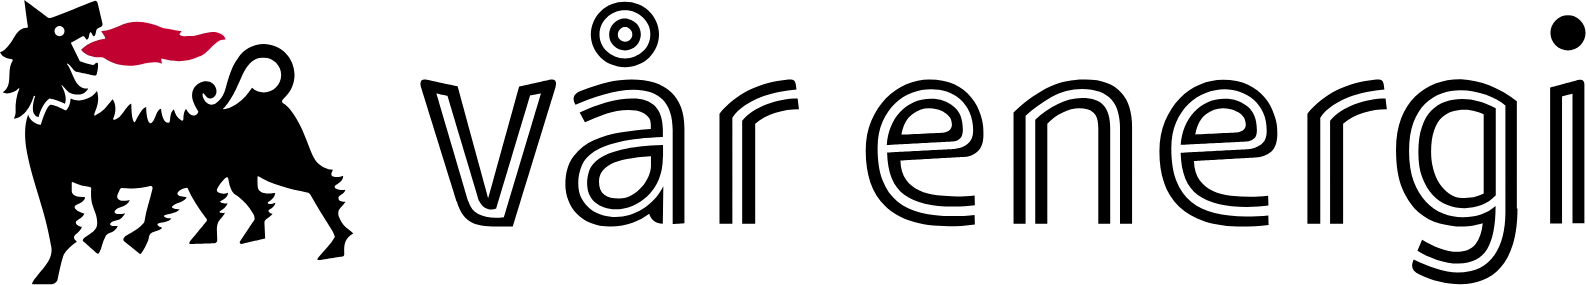 Vår Energi logo large (transparent PNG)